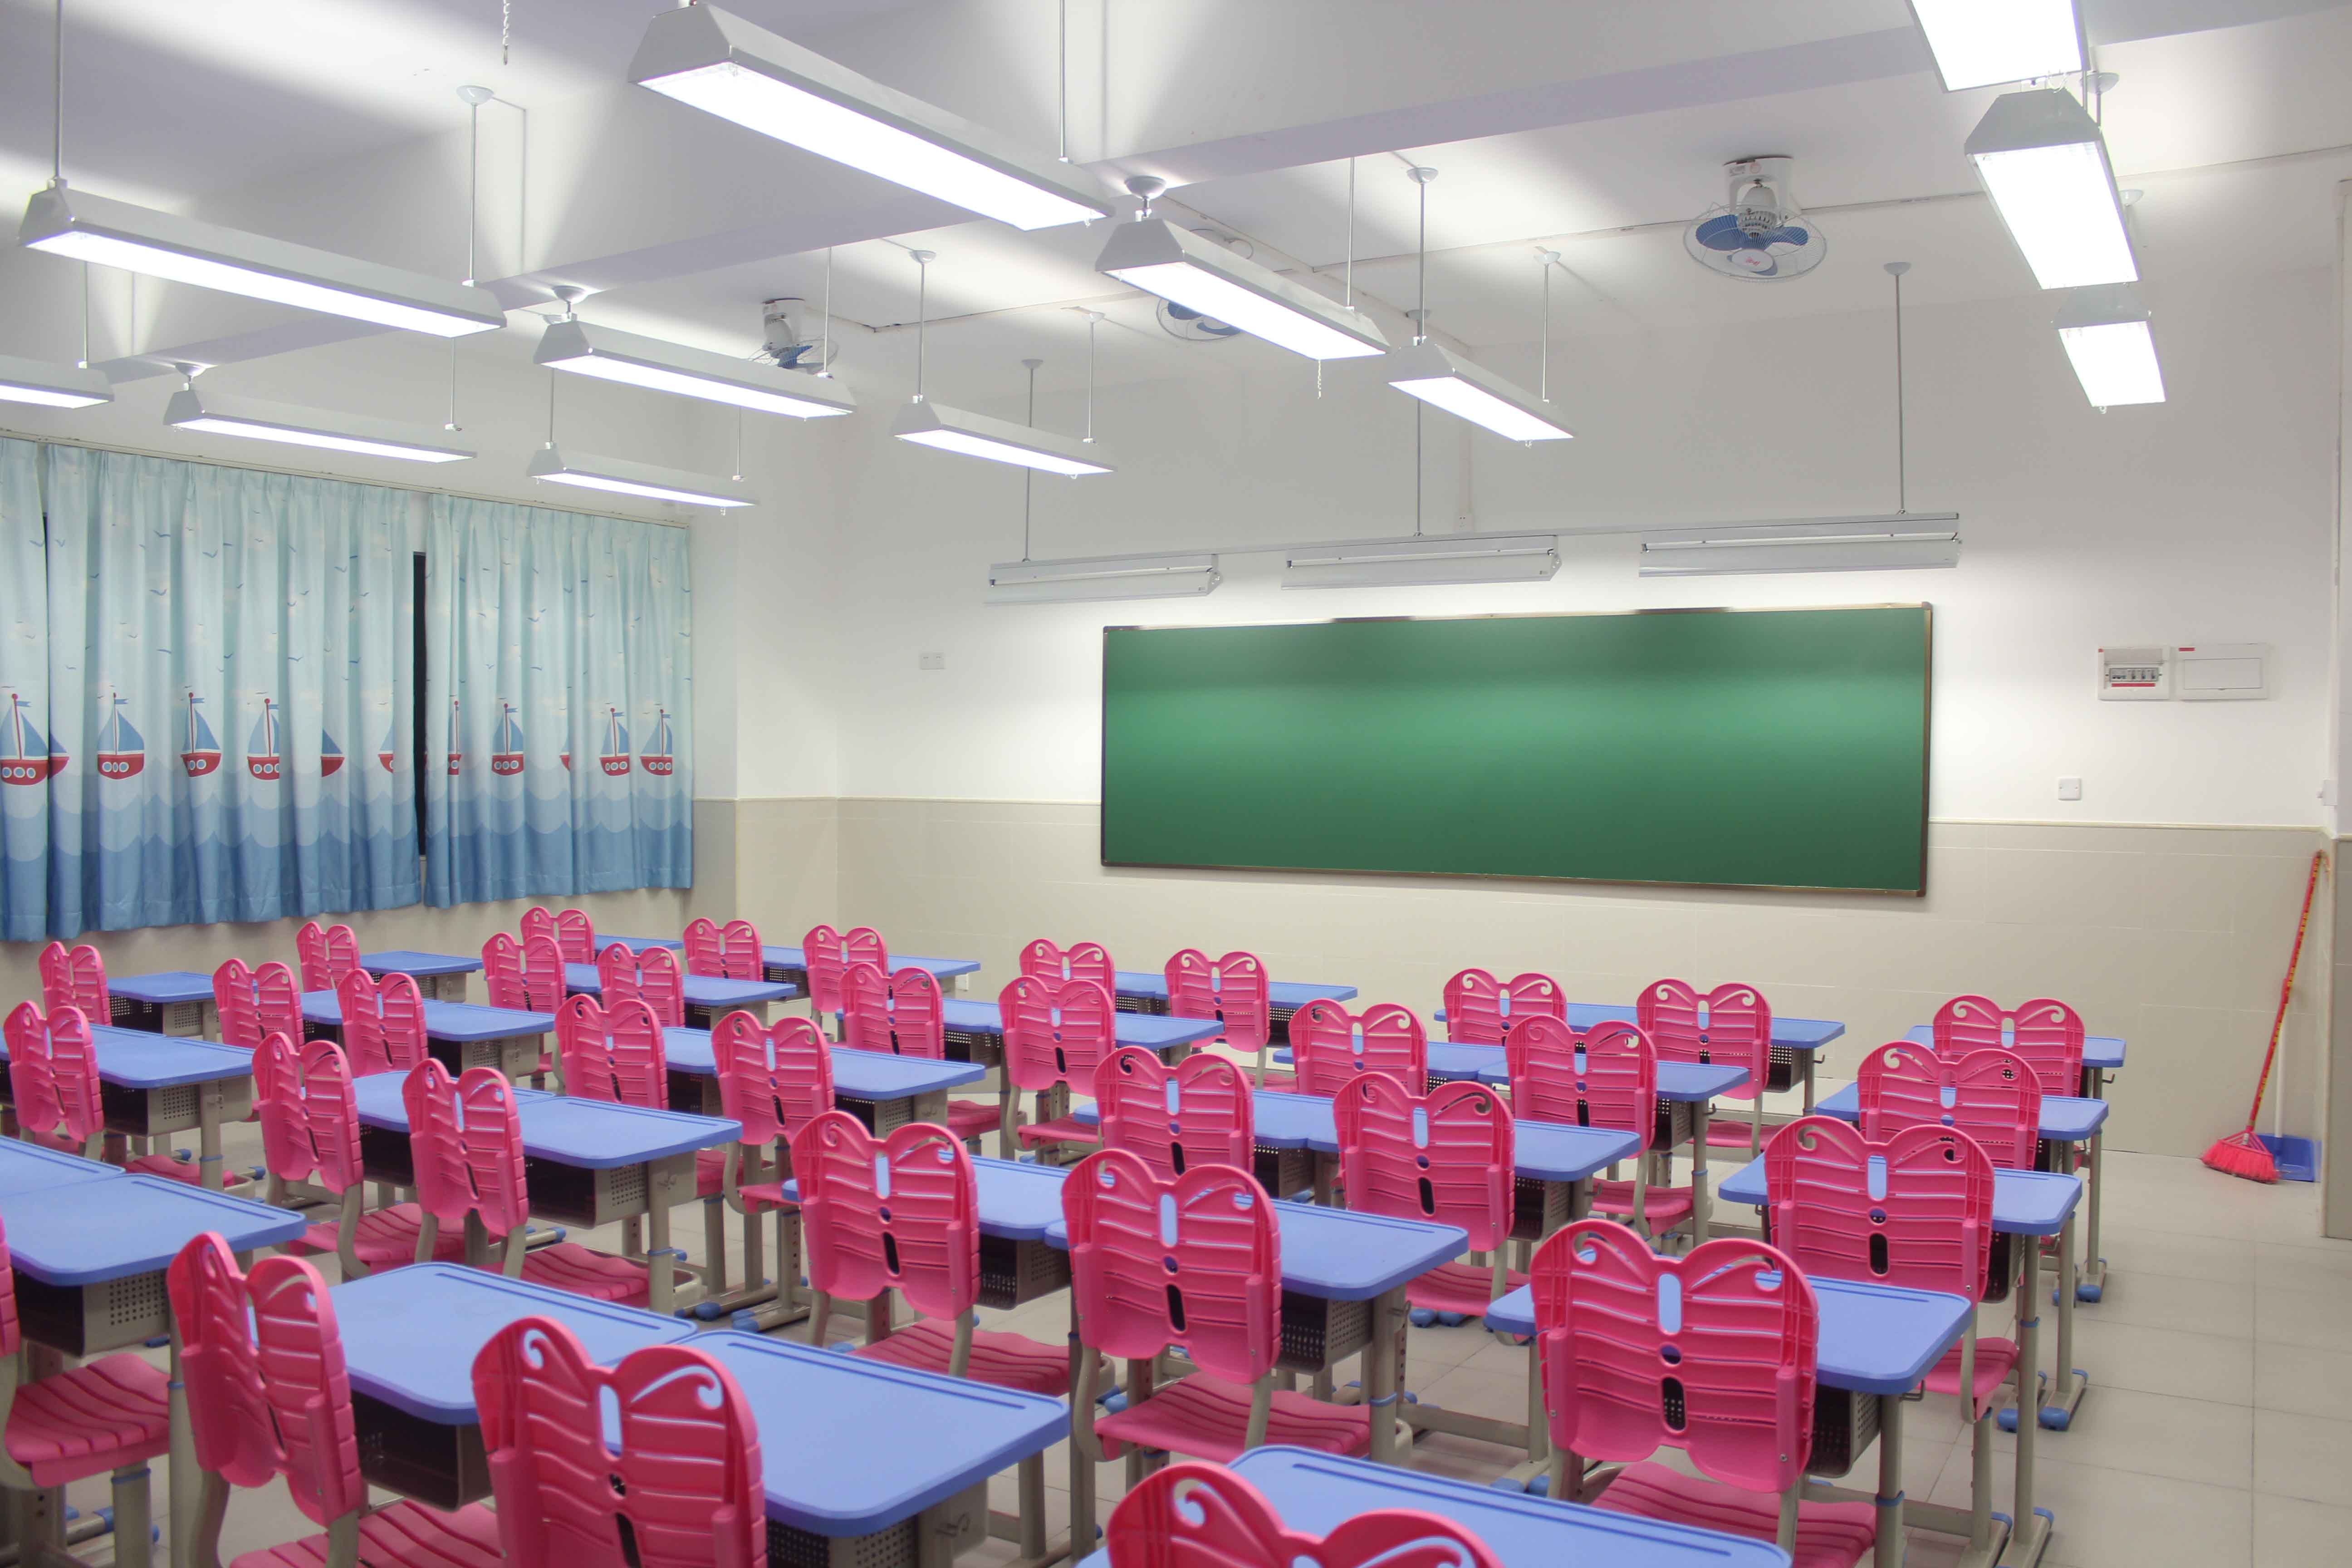 良好的教室照明环境,选择优质的教室照明灯具也很重要